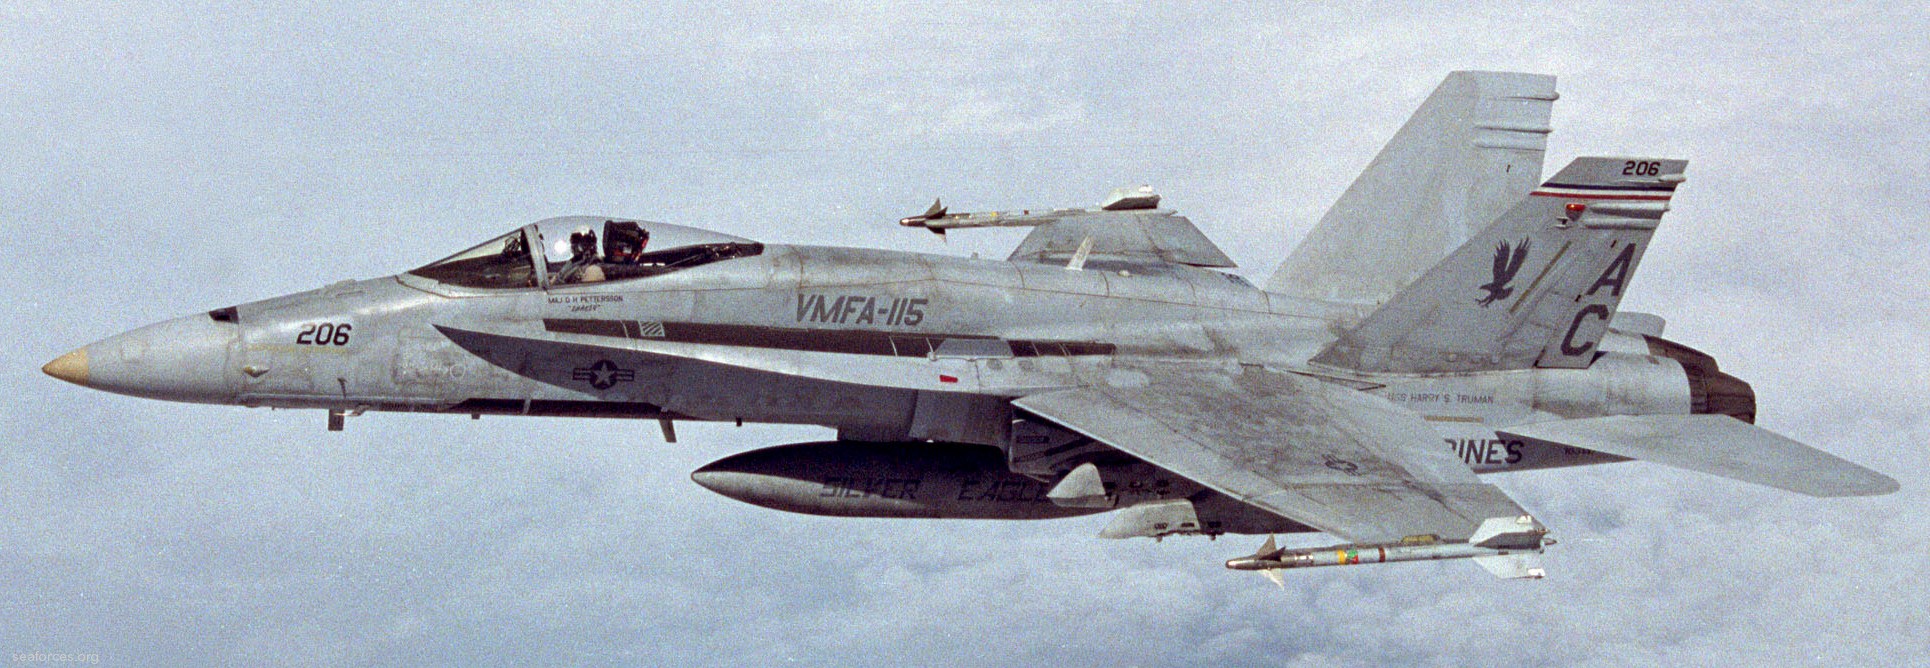 vmfa-115 silver eagles marine fighter attack squadron f/a-18a+ hornet 62